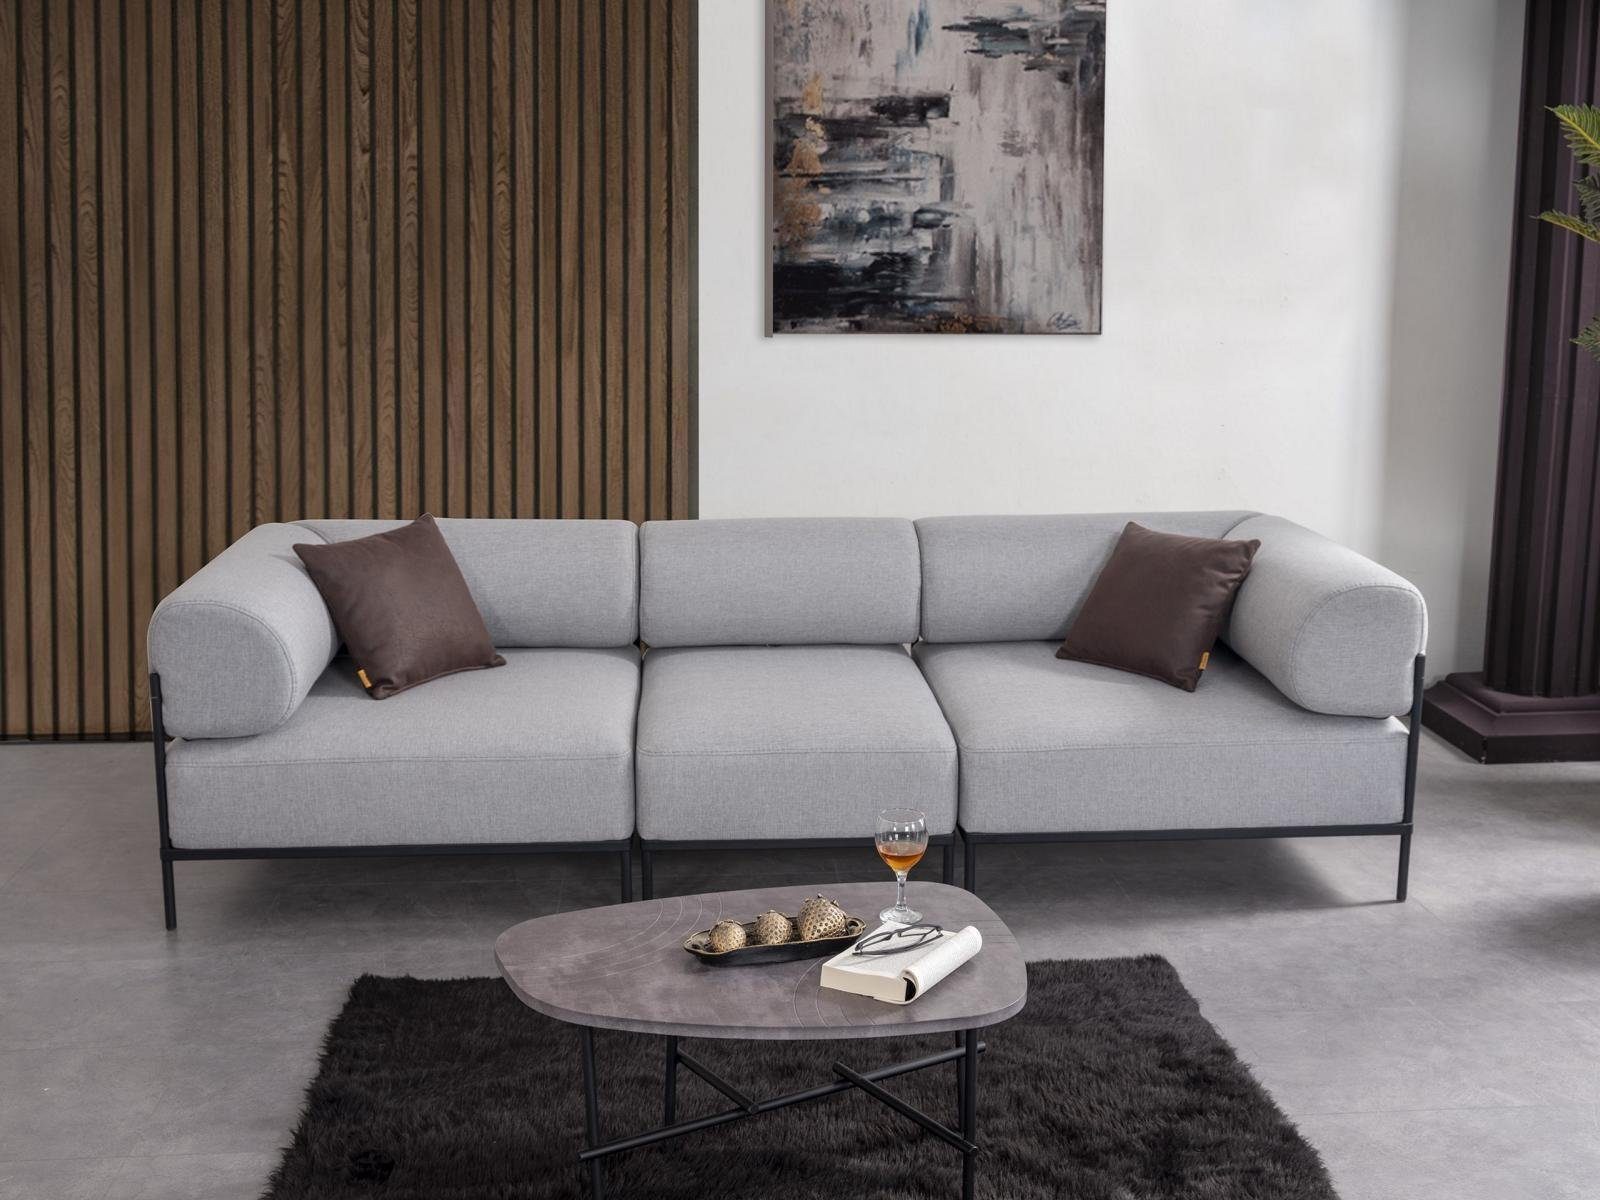 JVmoebel Sofa Wohnzimmer Sofa Dreisitzer Grau Couch Polstermöbel Luxus Einrichtung, 3 Teile, Made in Europa | Alle Sofas